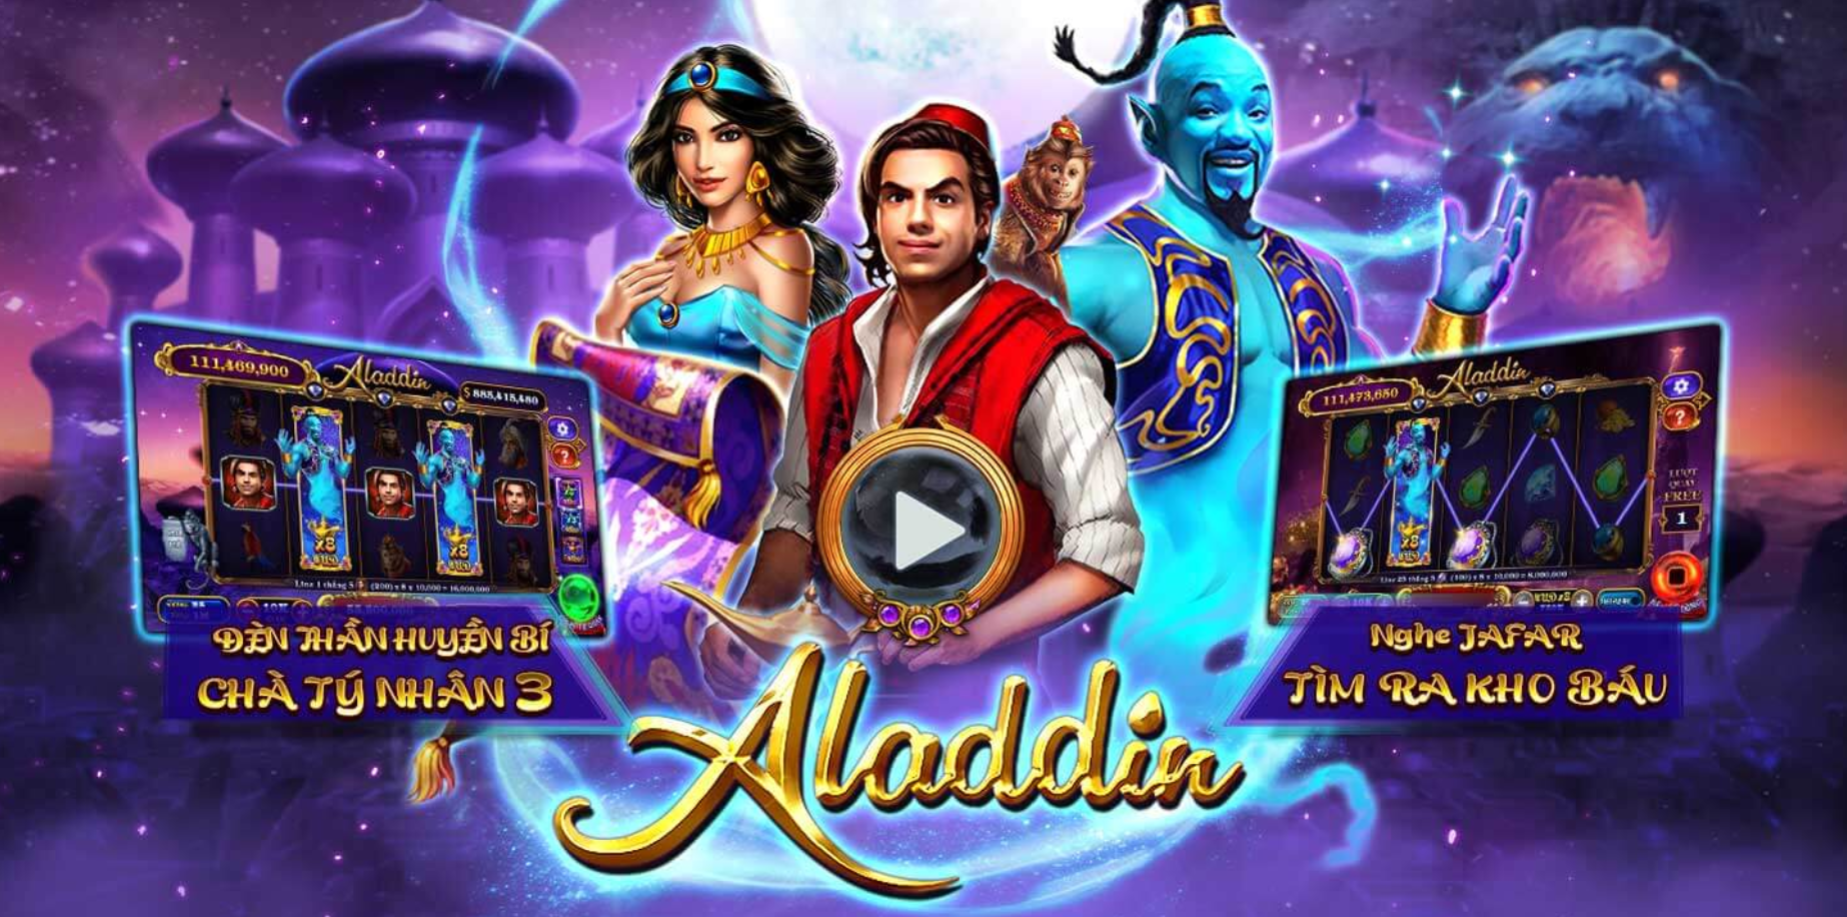 Nổ hũ Aladdin là game gì?